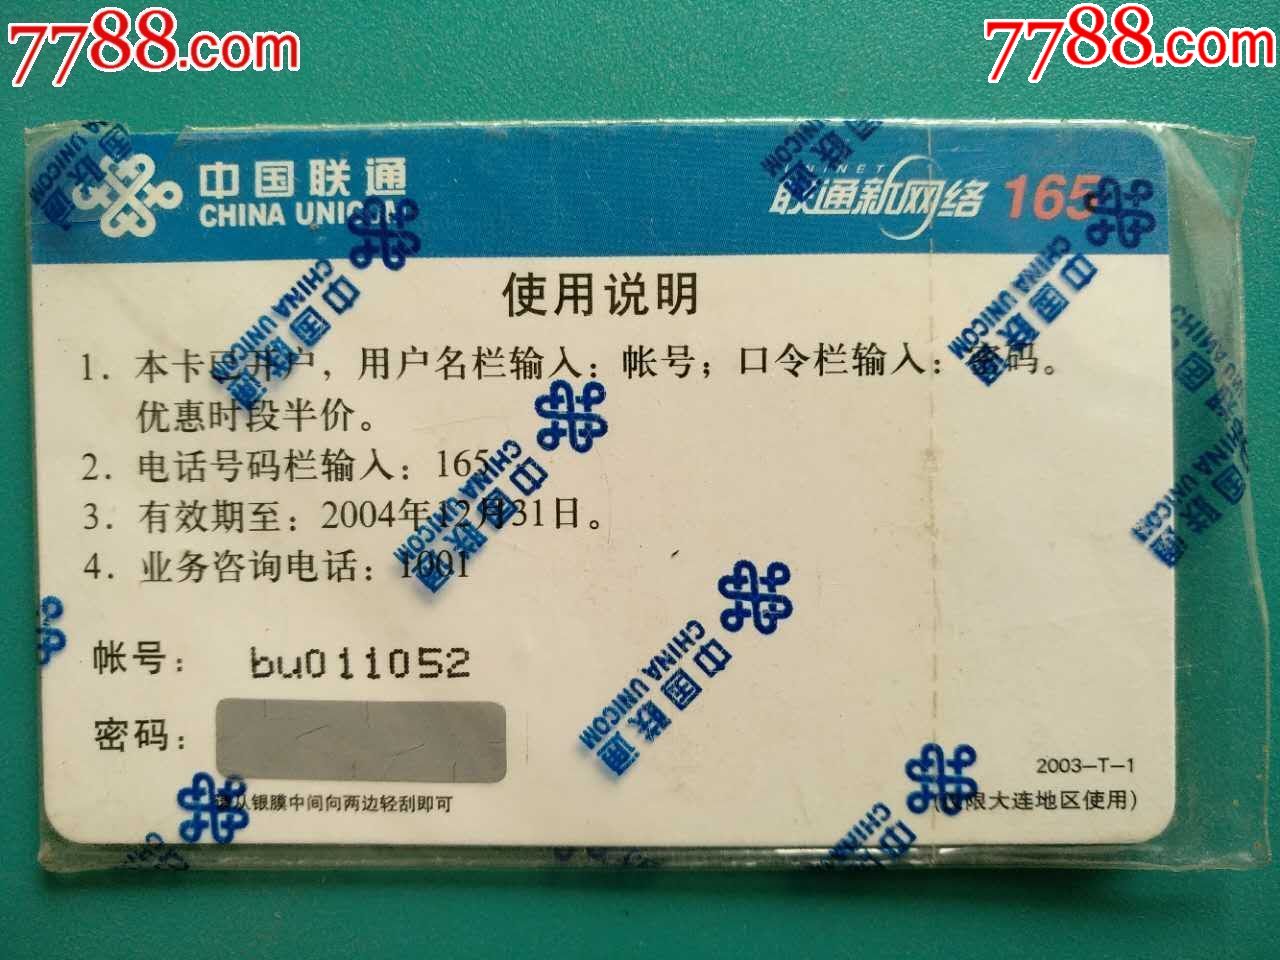 随e邮上网卡(过期新卡)-价格:12.0000元-se551